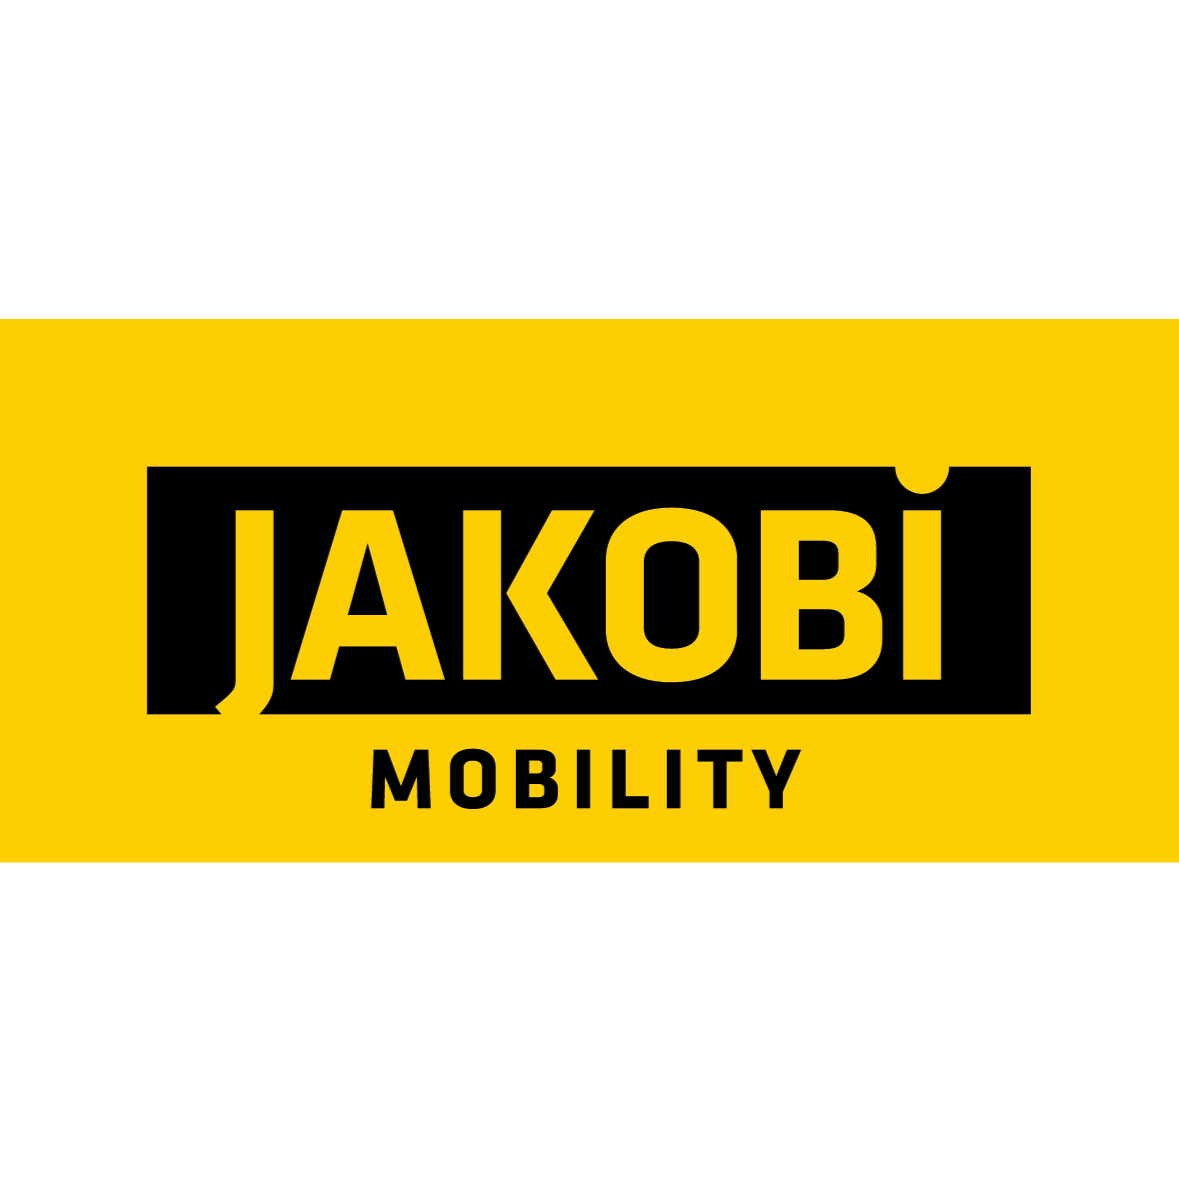 Logo Wir sind Jakobi Mobility: Alles rund ums Auto aus einer Hand. Unsere Services beinhalten: Abschleppdienst, Autovermietung, Pannenhilfe, KFZ-Meisterwerkstatt im Raum Freiburg und Titisee-Neustadt.